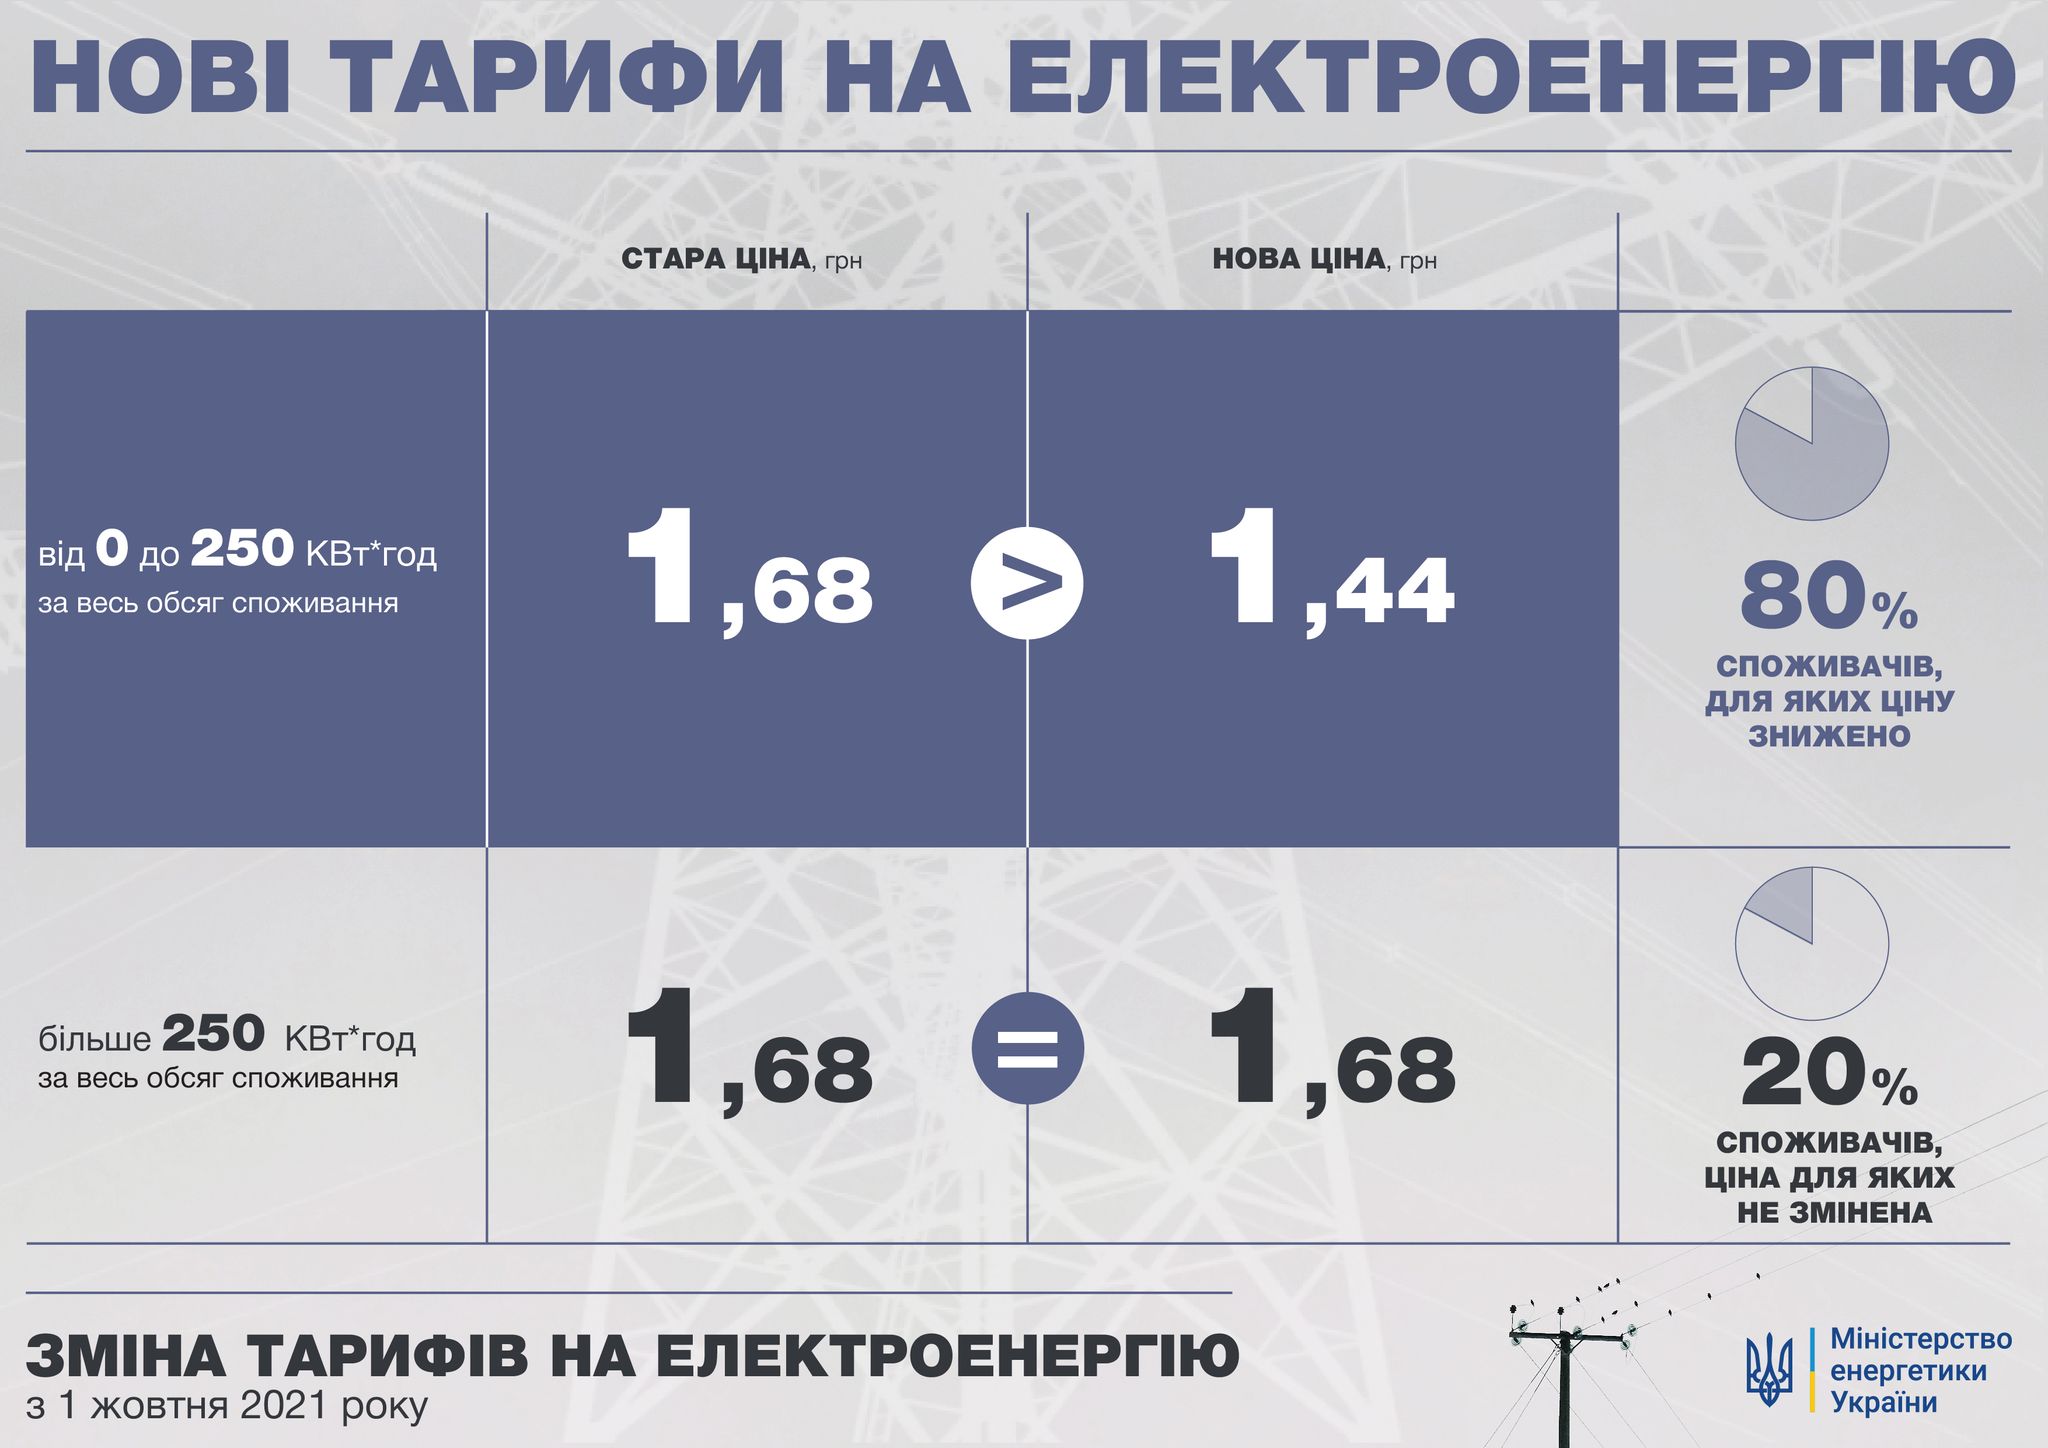 Внимание! Для жителей г. Новокузнецка изменились тарифы оплаты коммунальных услуг!